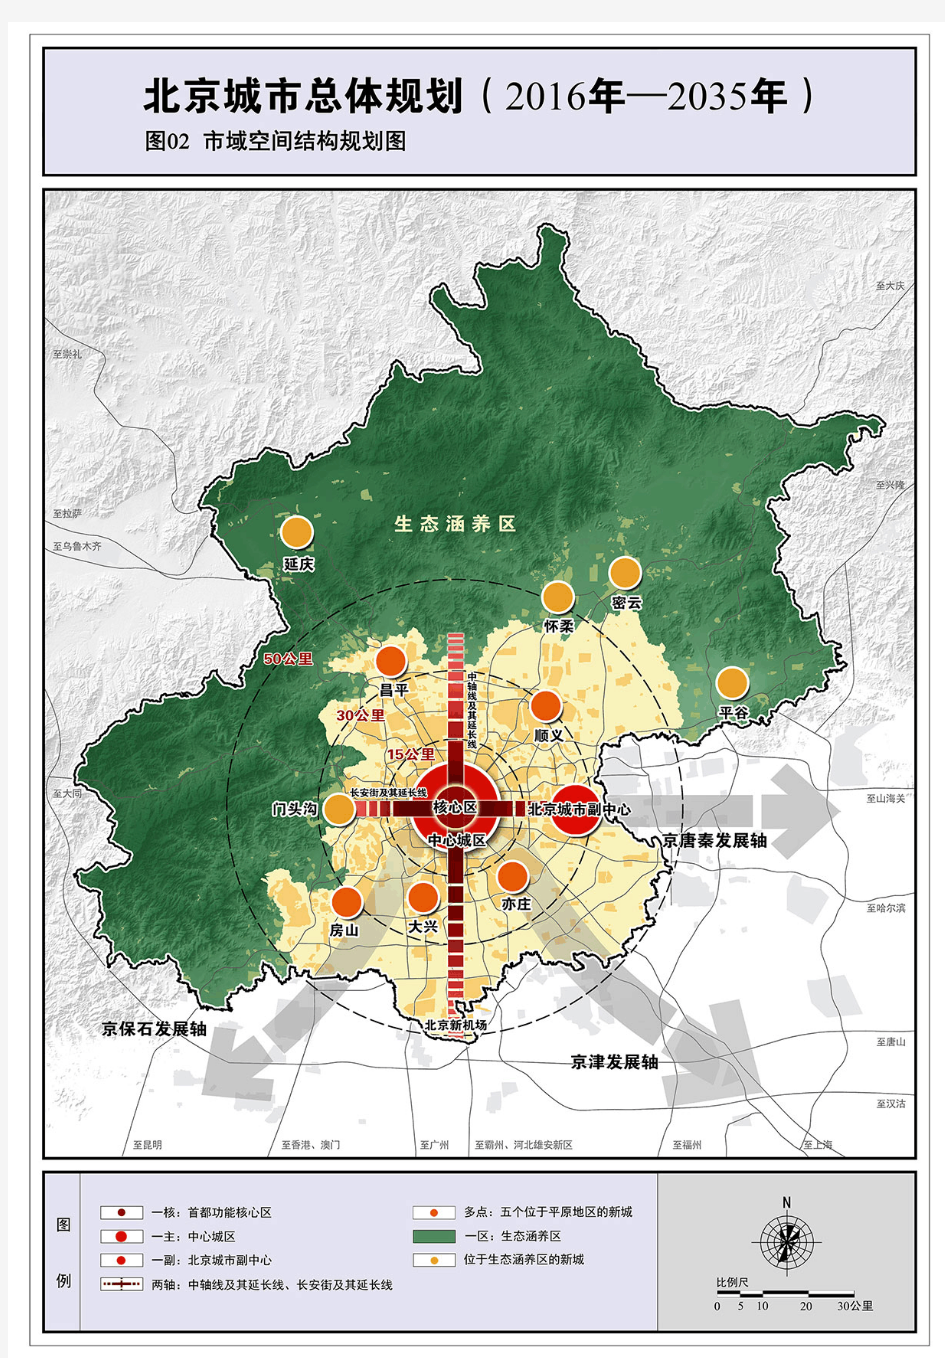 北京城市总体规划(2016-2035)图纸